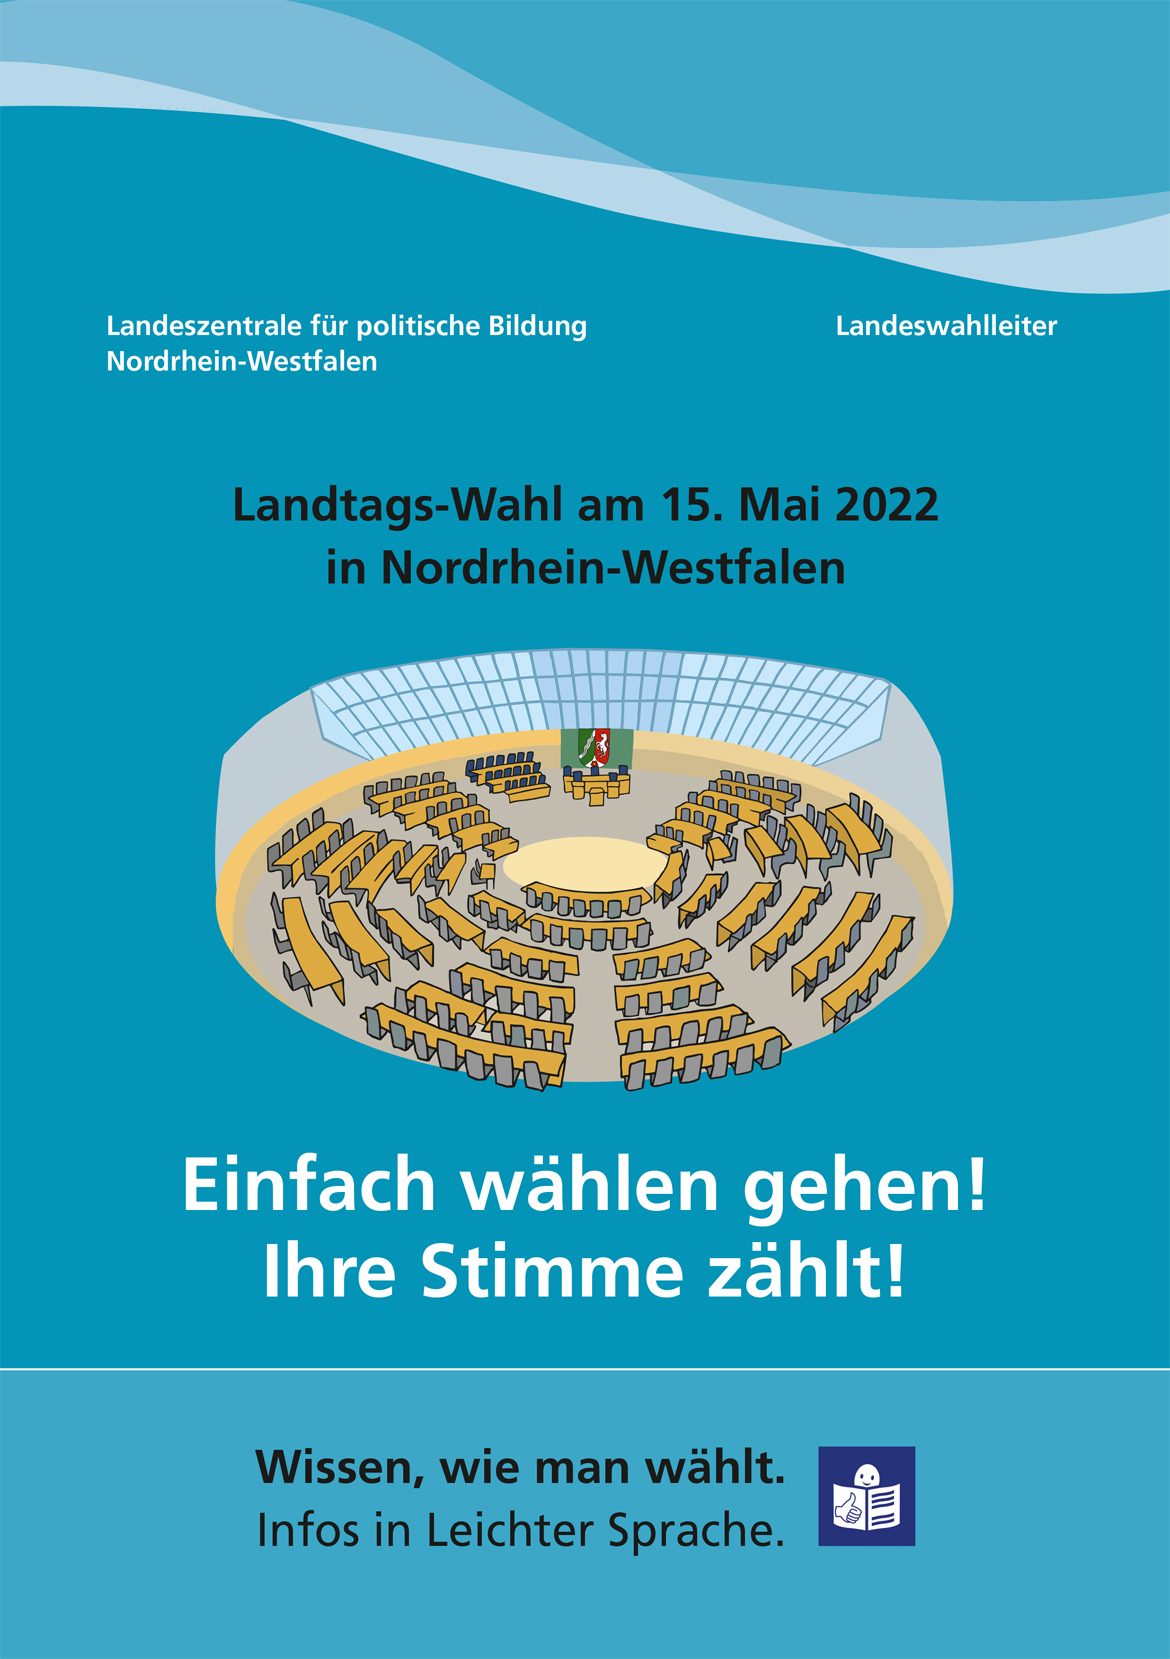 Einfach wählen gehen - Landtags-Wahl am 15. Mai 2022 in Nordrhein-Westfalen